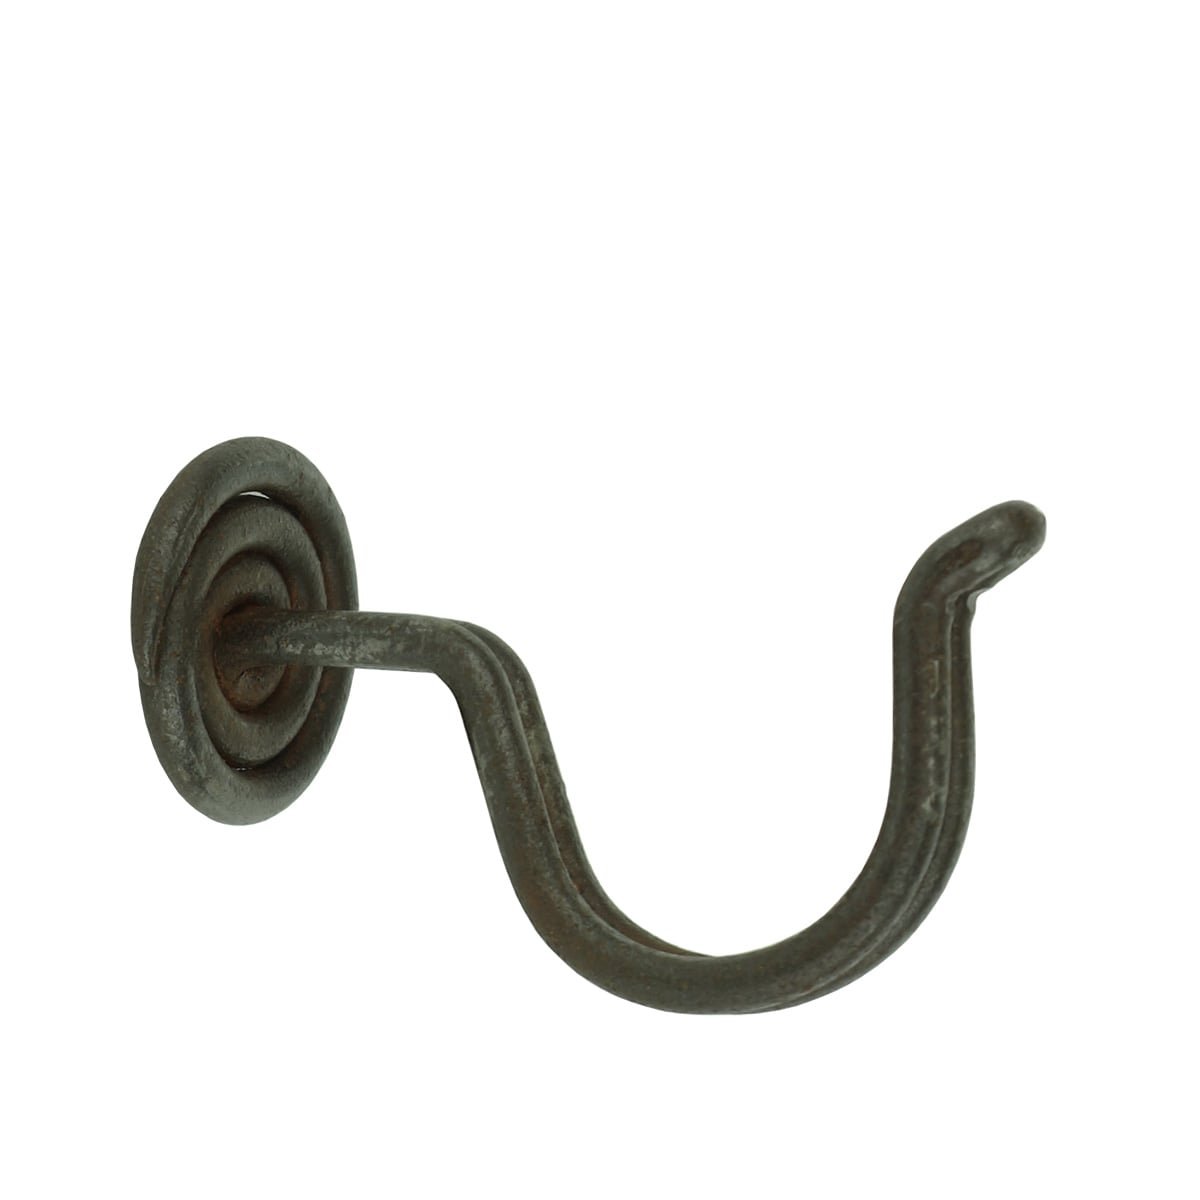 Thread hook vintage brown iron Speyer - 30 mm